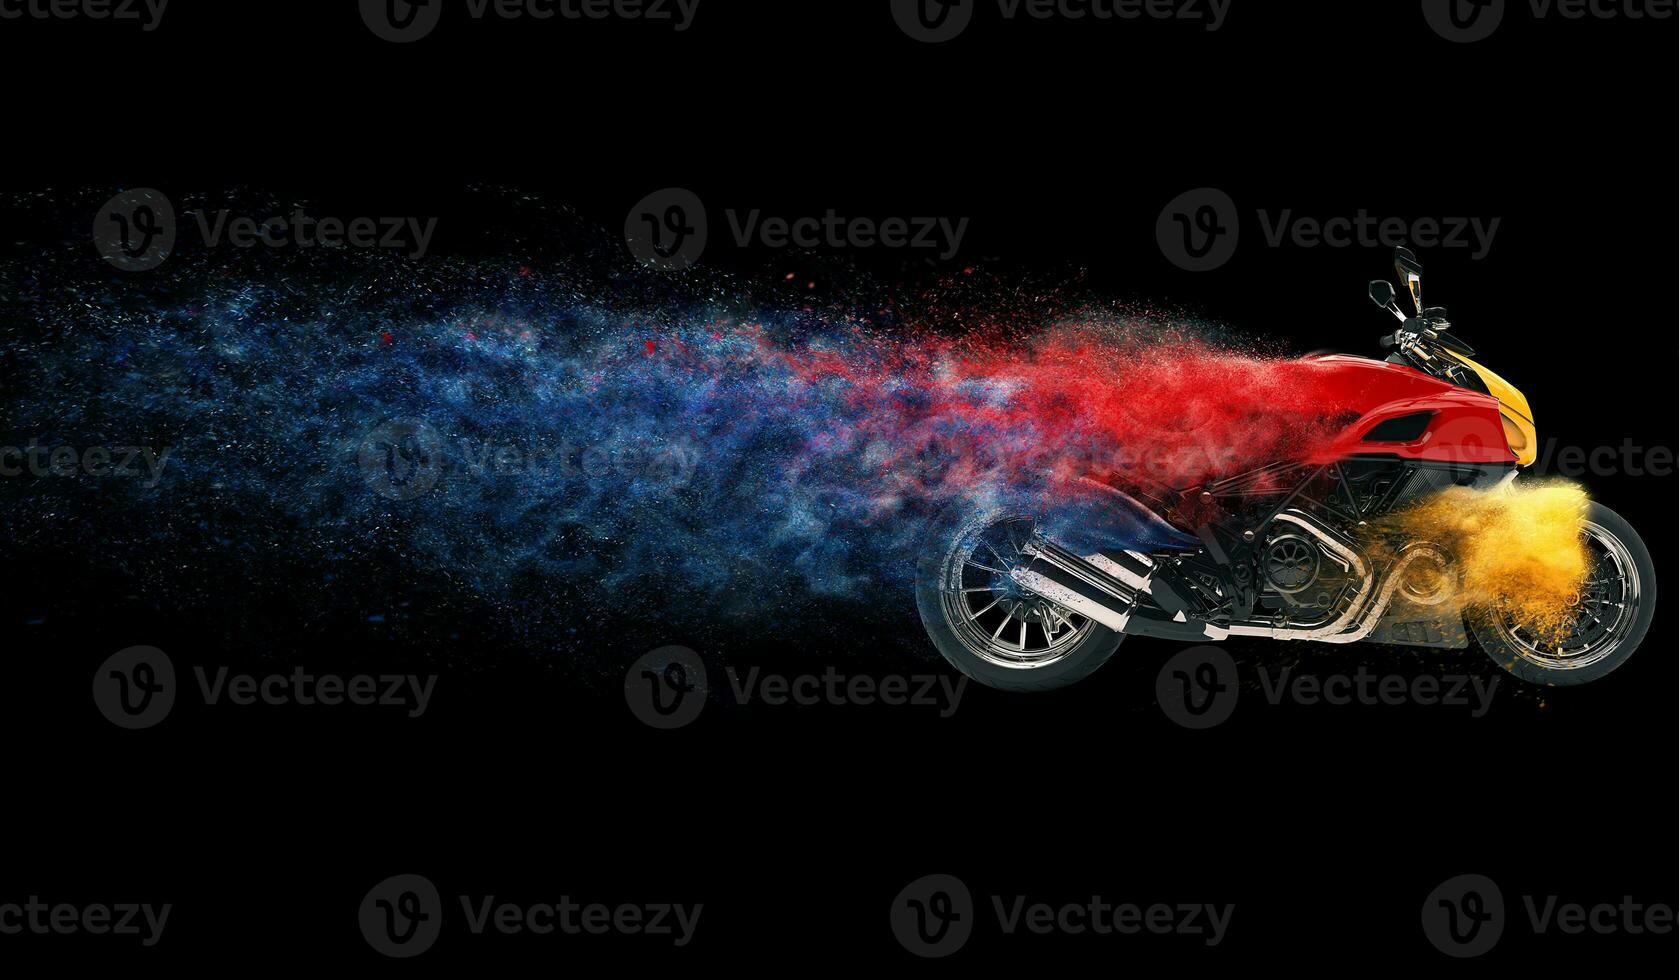 sporter cykel - färgrik partikel effekt - 3d illustration foto